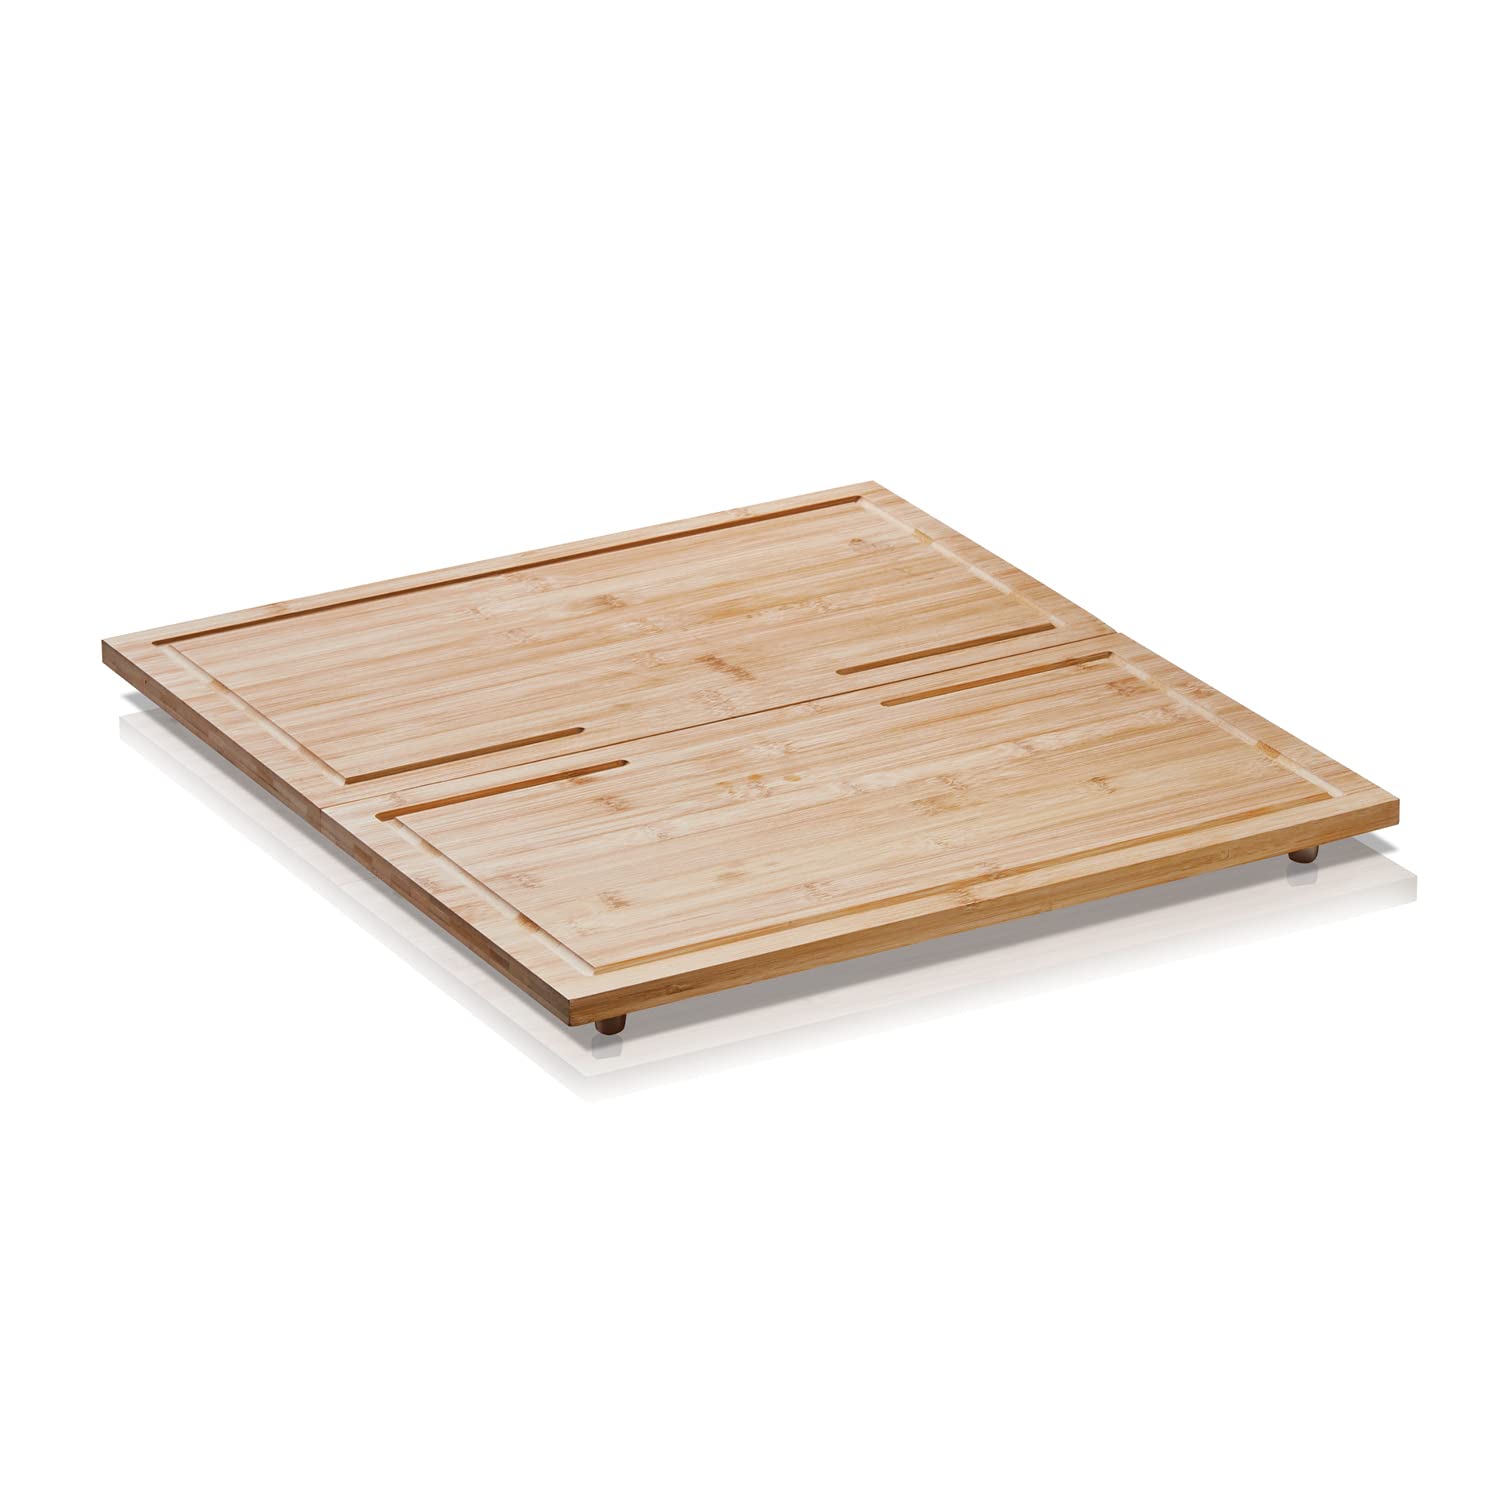 KHG Herdabdeckplatten Bambus 2er-Set je 50x28 cm Holz braun, Kochfeld-Abdeckung für alle Herdarten inkl. Schneidebrett mit Saftrille mit rutschfesten Kunststoff-Füßen